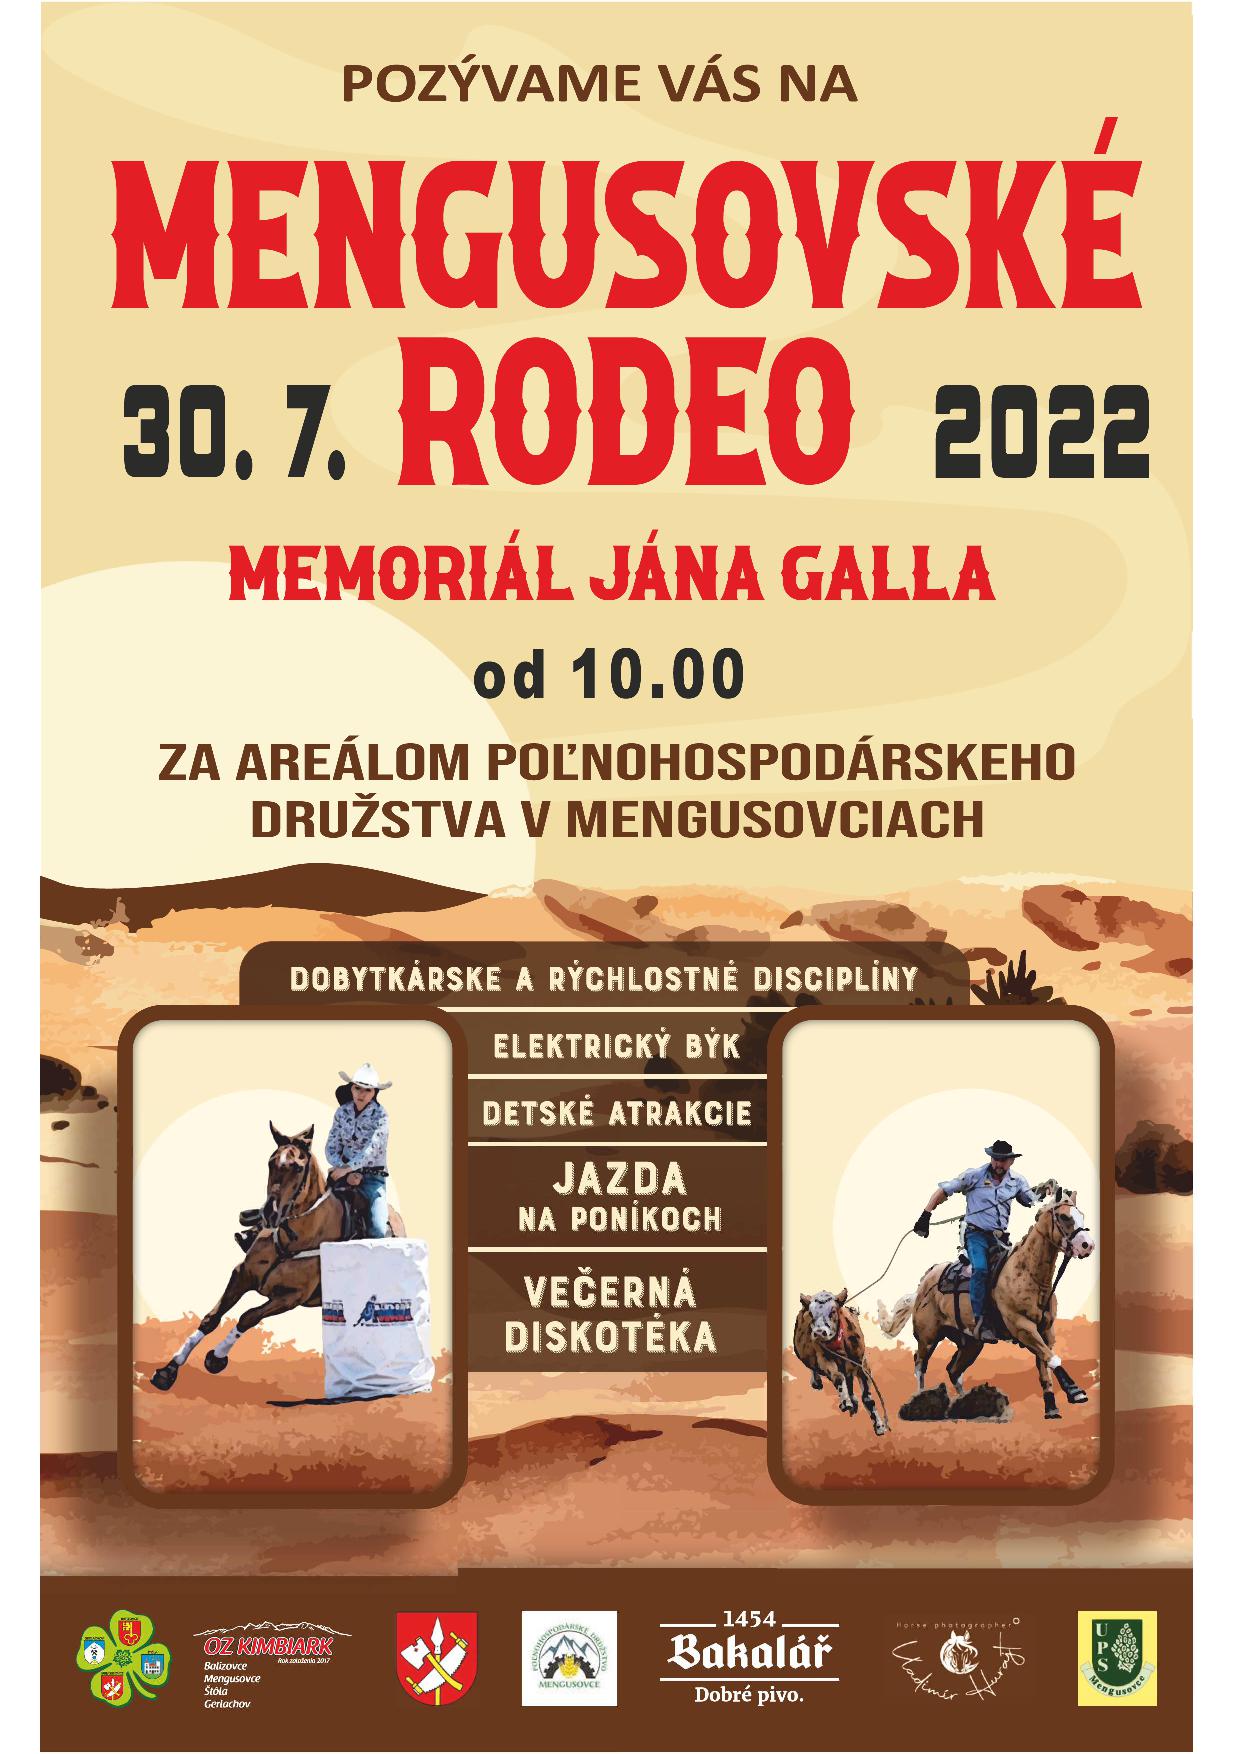 Mengusovsk rodeo Memoril Jna Galla 2022 Mengusovce